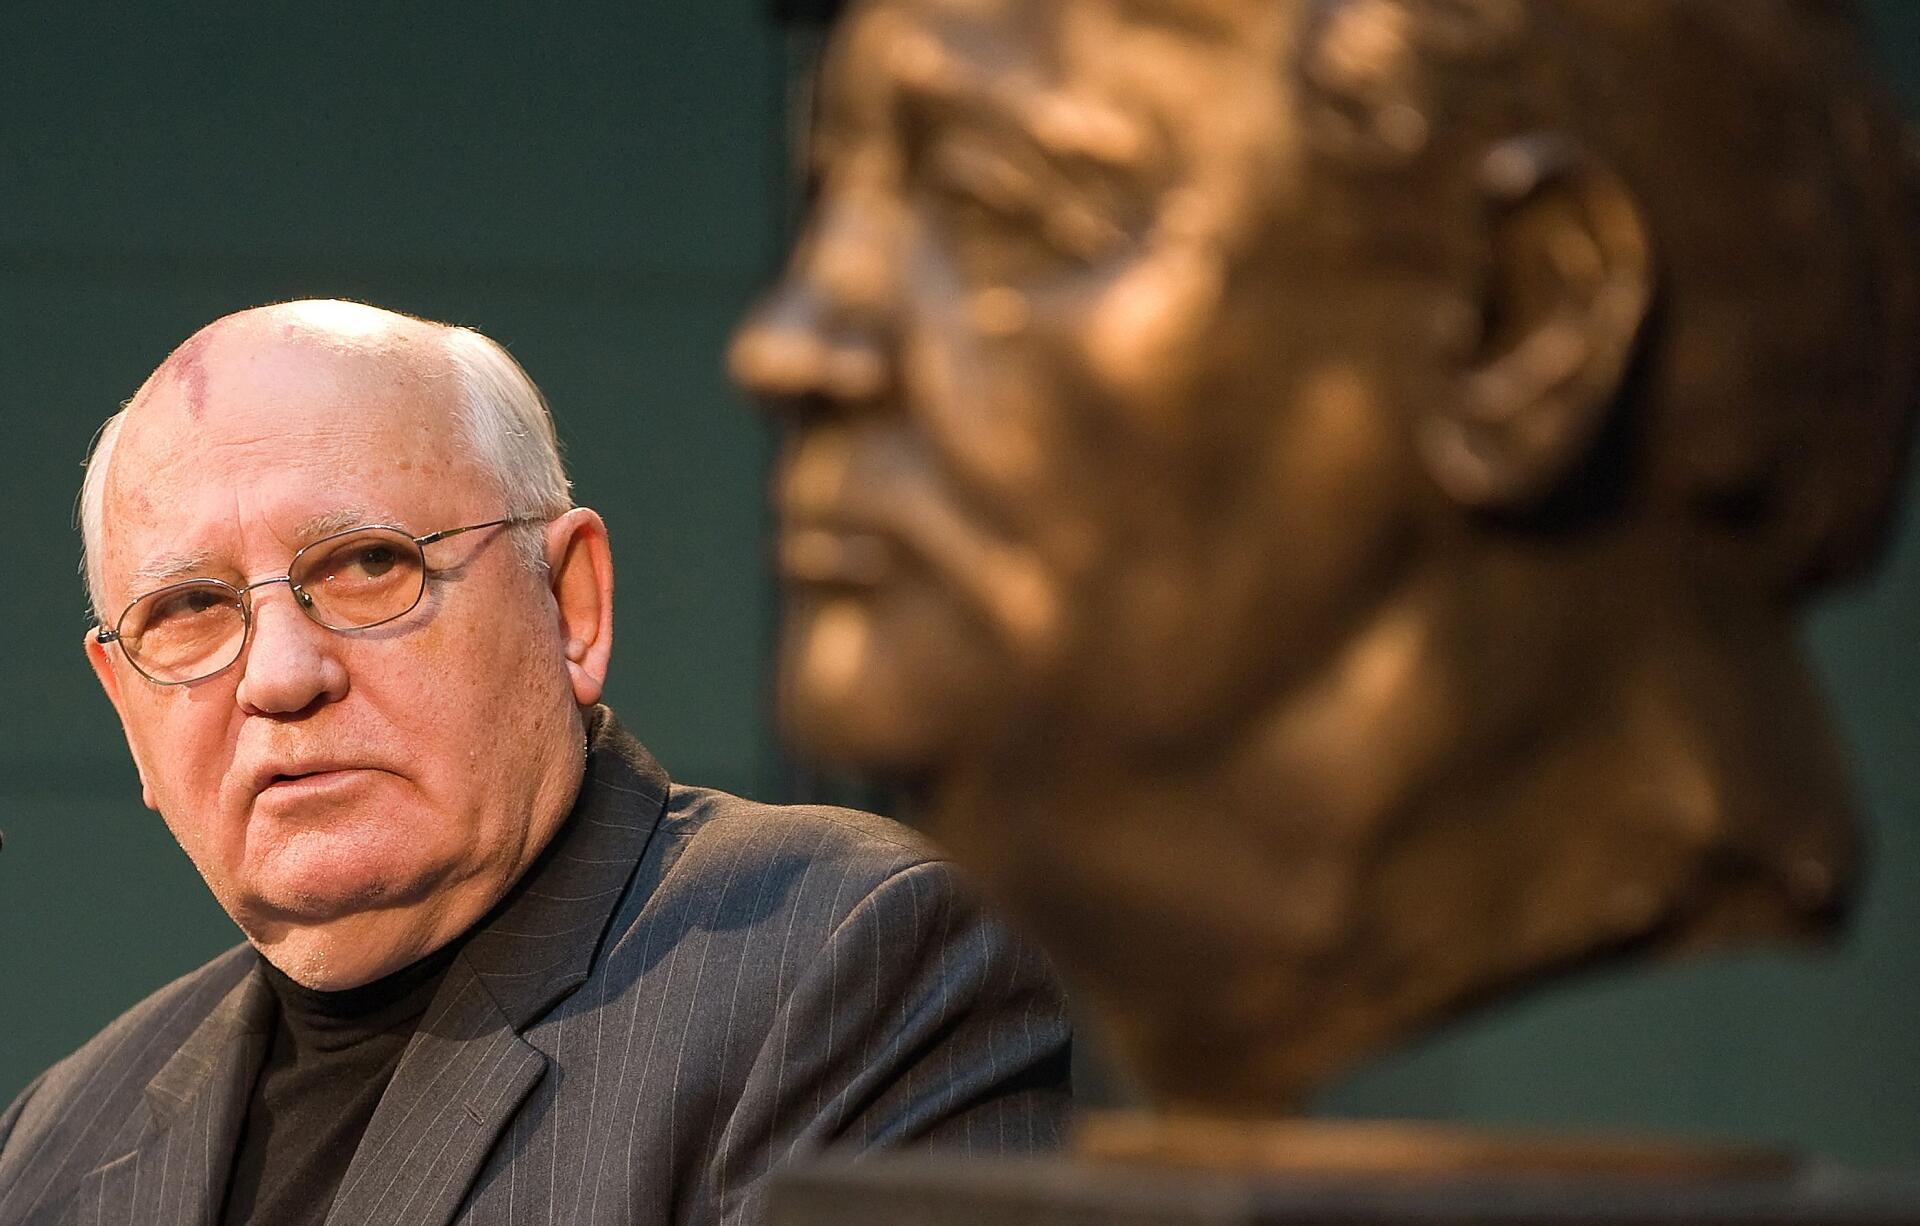 Le dernier président soviétique Mikhaïl Gorbatchev regarde un buste de lui-même réalisé par l’artiste français Serge Mangin à Berlin, le 9 novembre 2009.